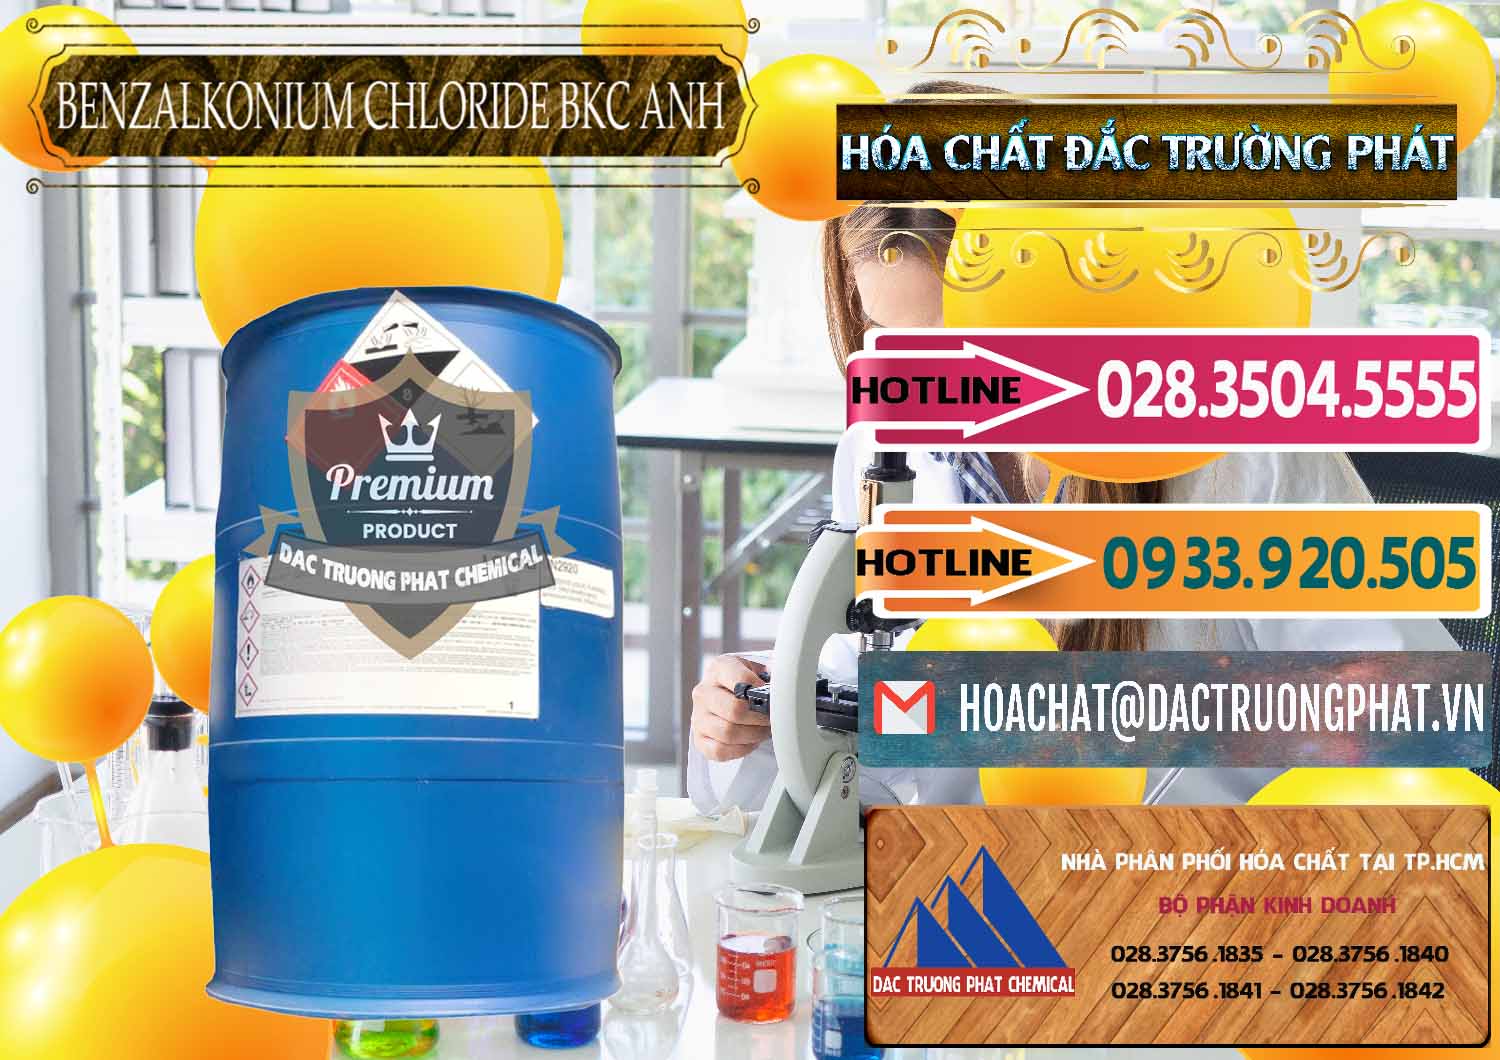 Nơi phân phối và bán BKC - Benzalkonium Chloride 80% Anh Quốc Uk Kingdoms - 0457 - Nơi phân phối và kinh doanh hóa chất tại TP.HCM - dactruongphat.vn